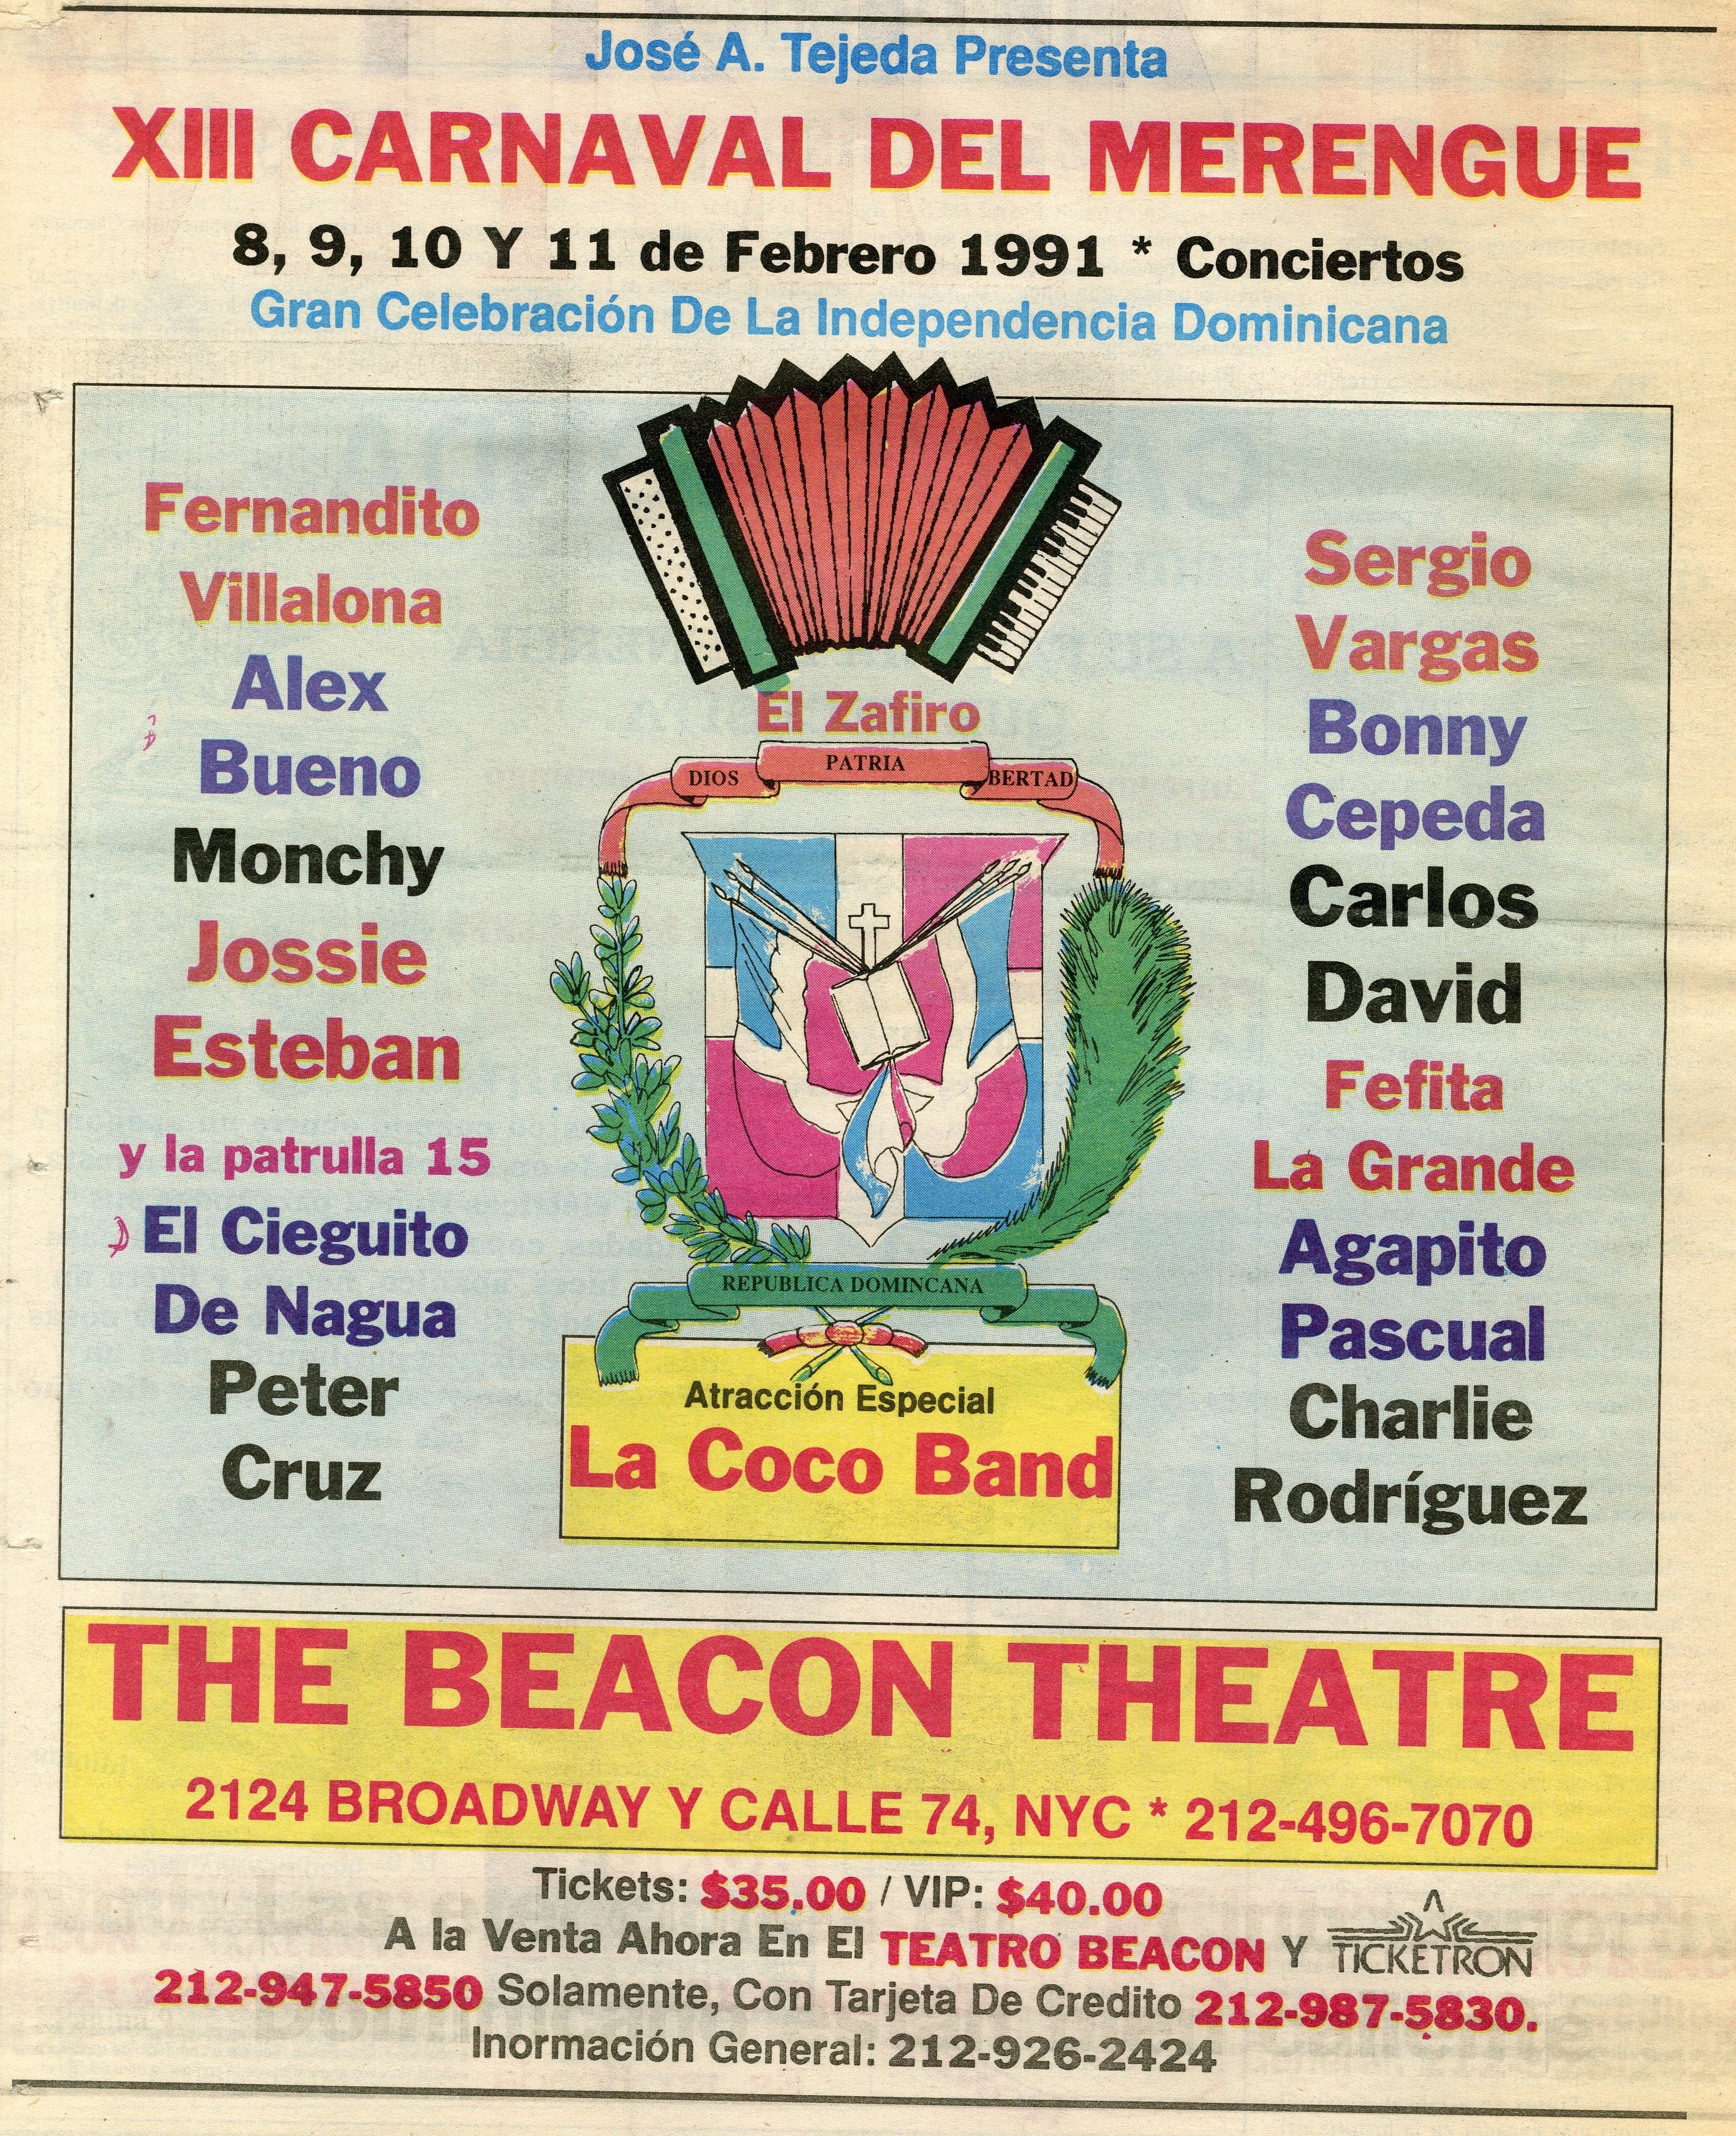 XIII Carnaval del Merengue 1991 Newspaper Advertisement